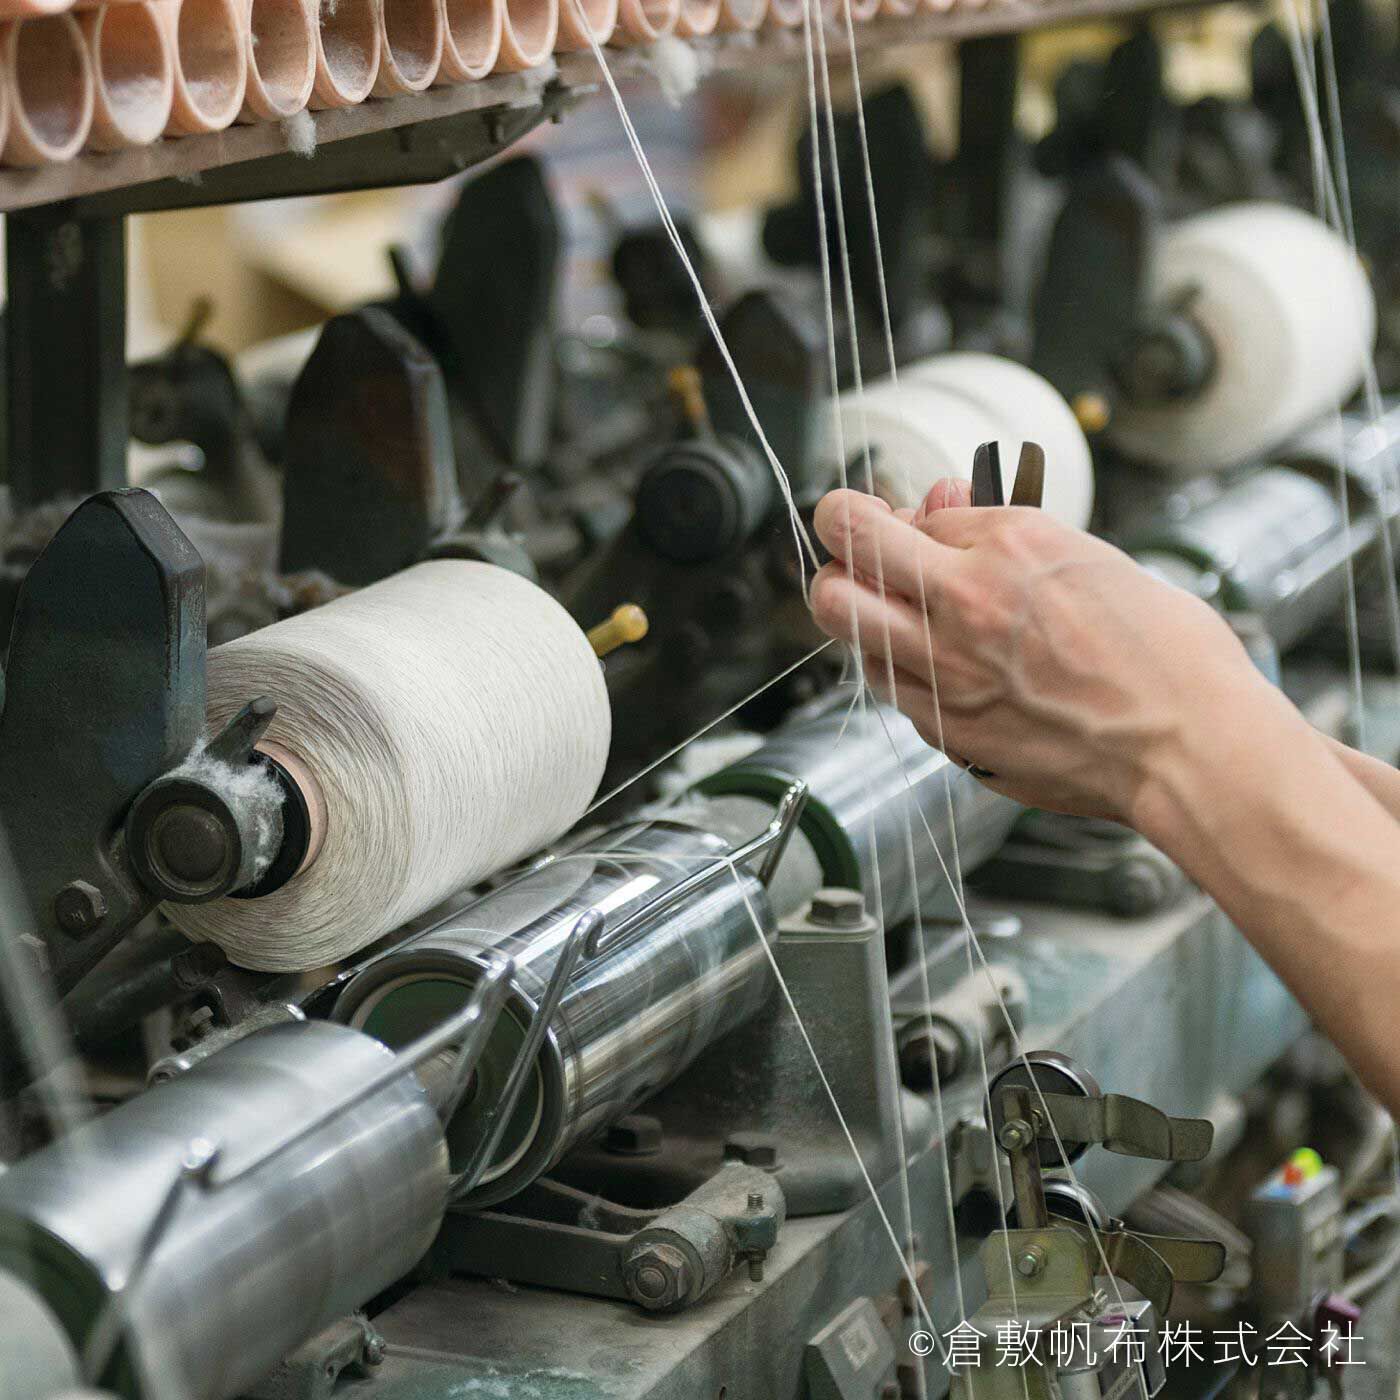 el:ment|el:ment　倉敷帆布と本革遣い　ショルダー遣いもできる　ワイド持ち手のワンハンドバッグ〈スズ〉|あらゆる工程において重要なのは、職人の技術と感覚。たとえば数本の原糸を1本の糸に合わせる工程で、糸の終わりを次の糸に手作業で継ぐ際、いかに継ぎ目を目立たなくするかが技の見せどころだそう。